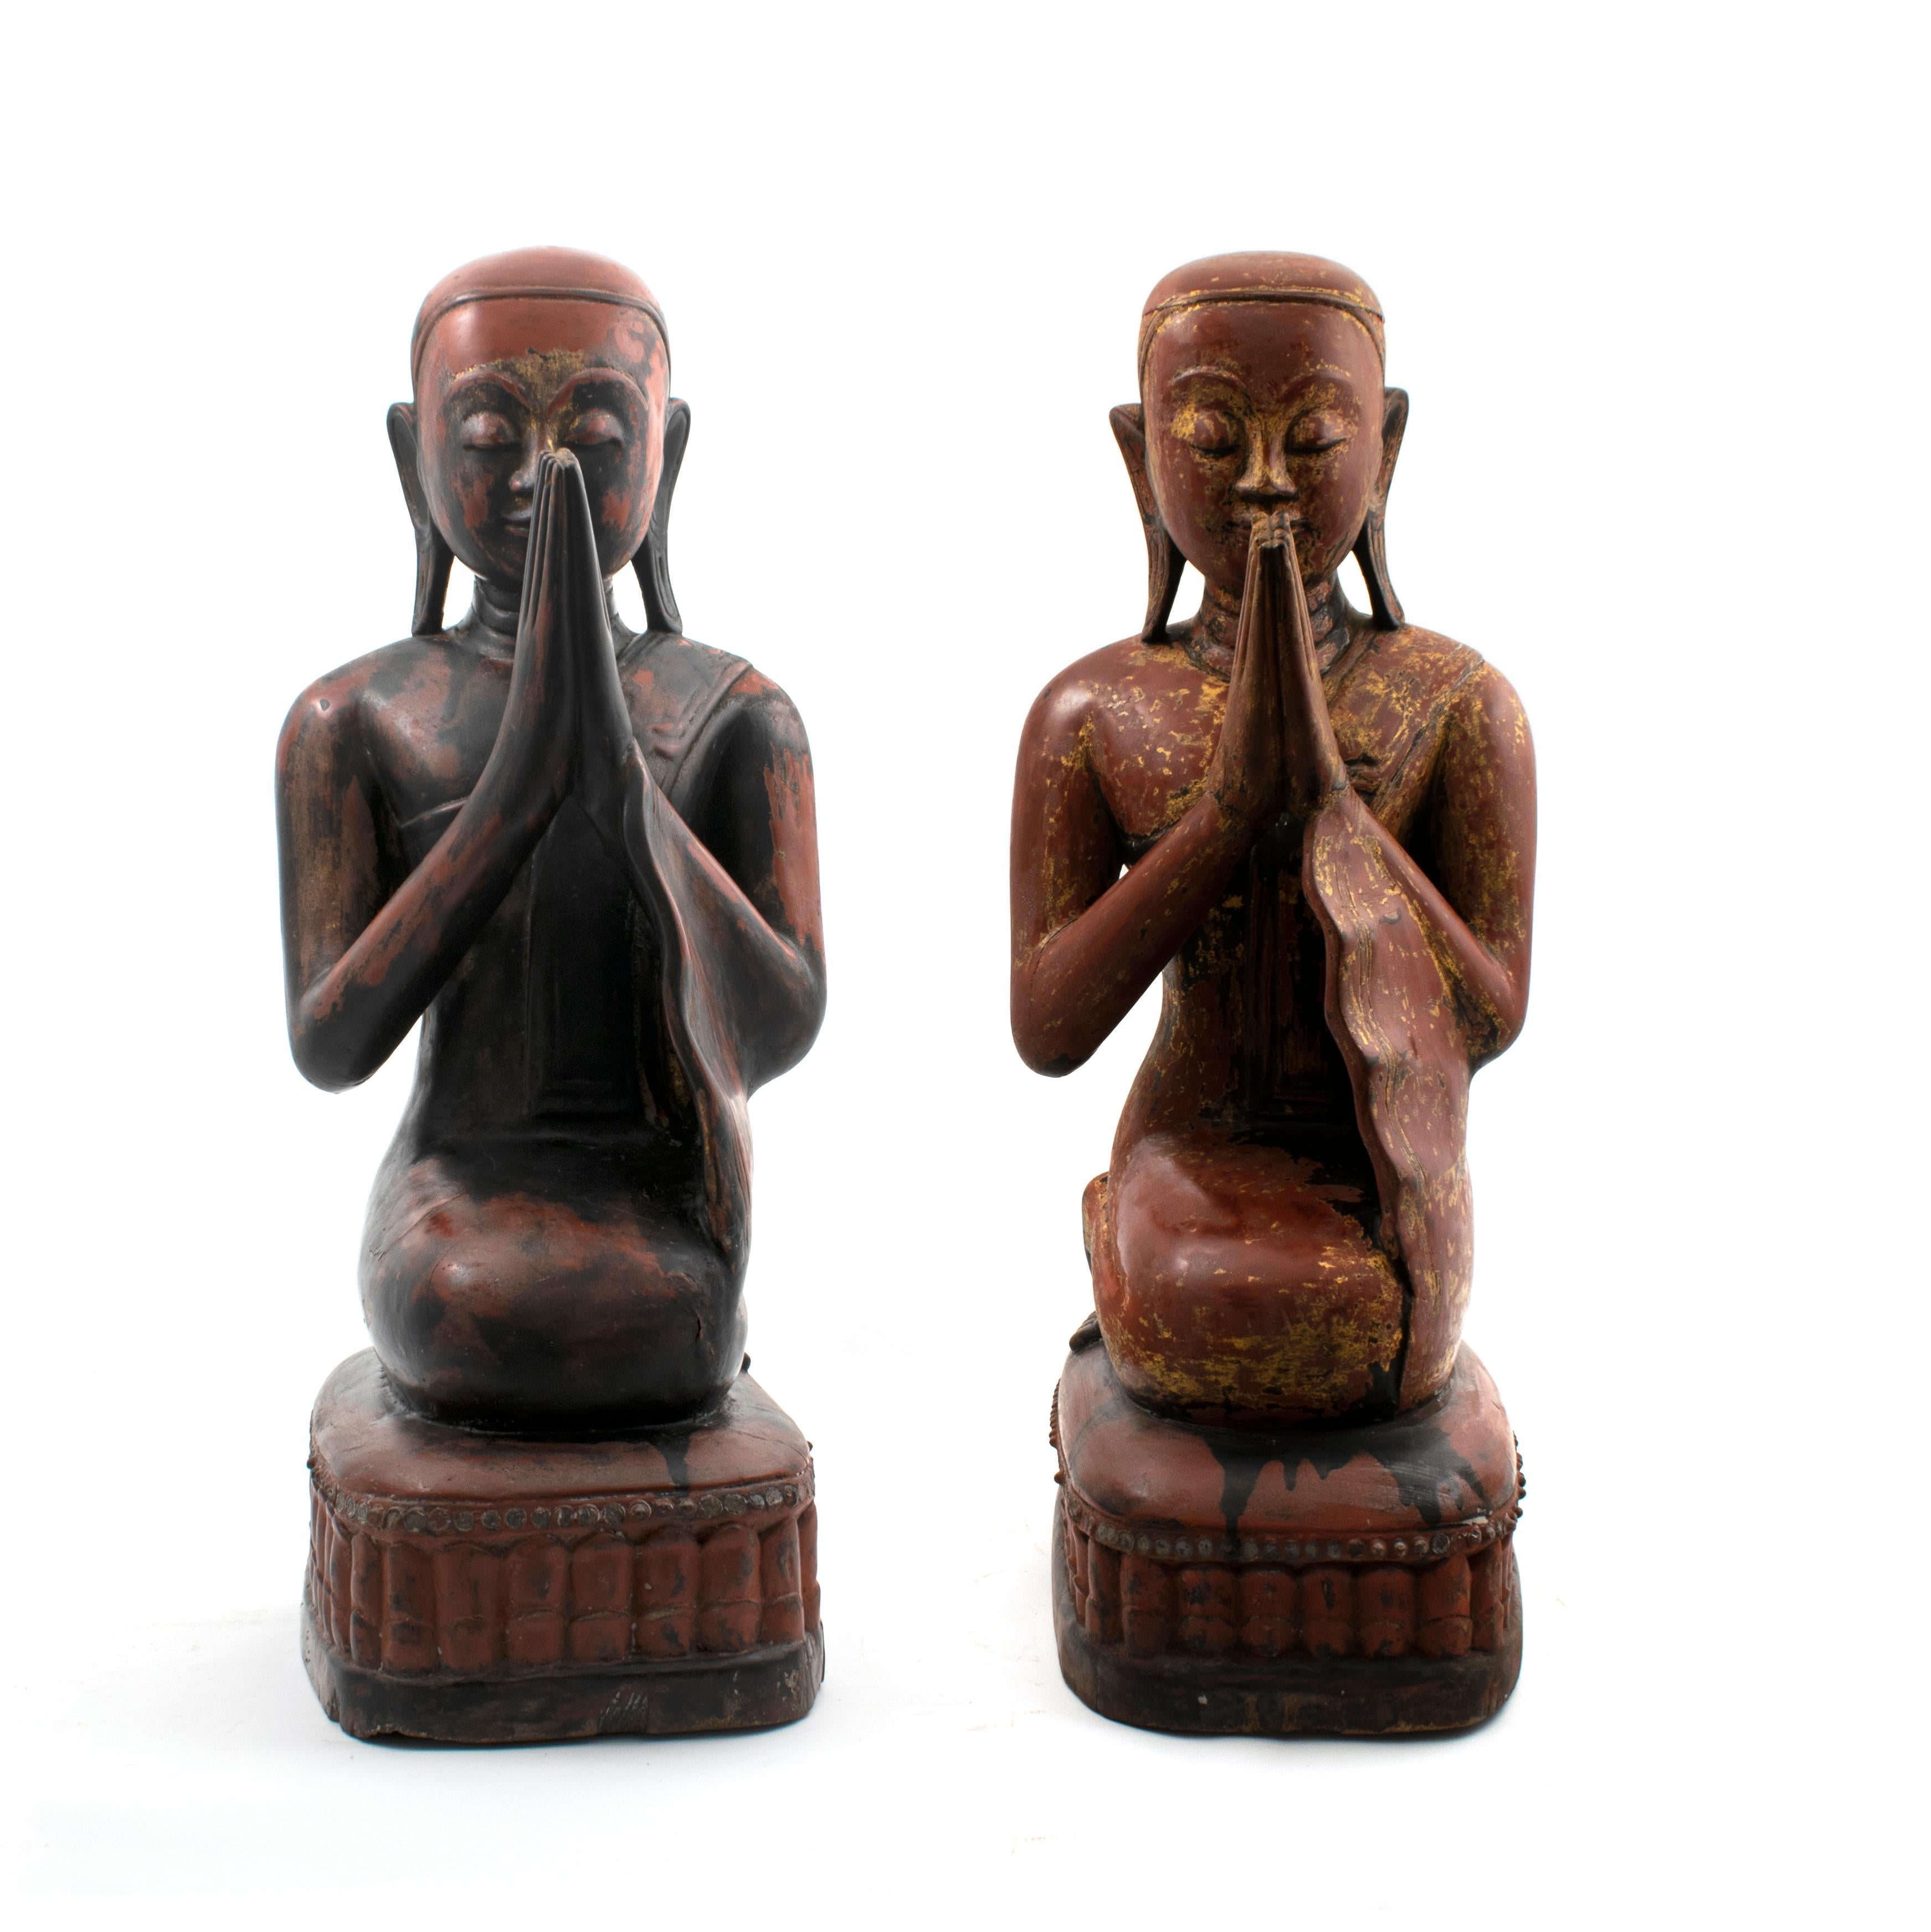 Seltenes Paar großer kniender Mönche in der Gebets-/Meditationshaltung.
Rot und schwarz lackiertes birmanisches Teakholz mit Resten von Blattgold. Unberührter Originalzustand mit schöner altersbedingter Patina.
Sehr schön mit friedlichen